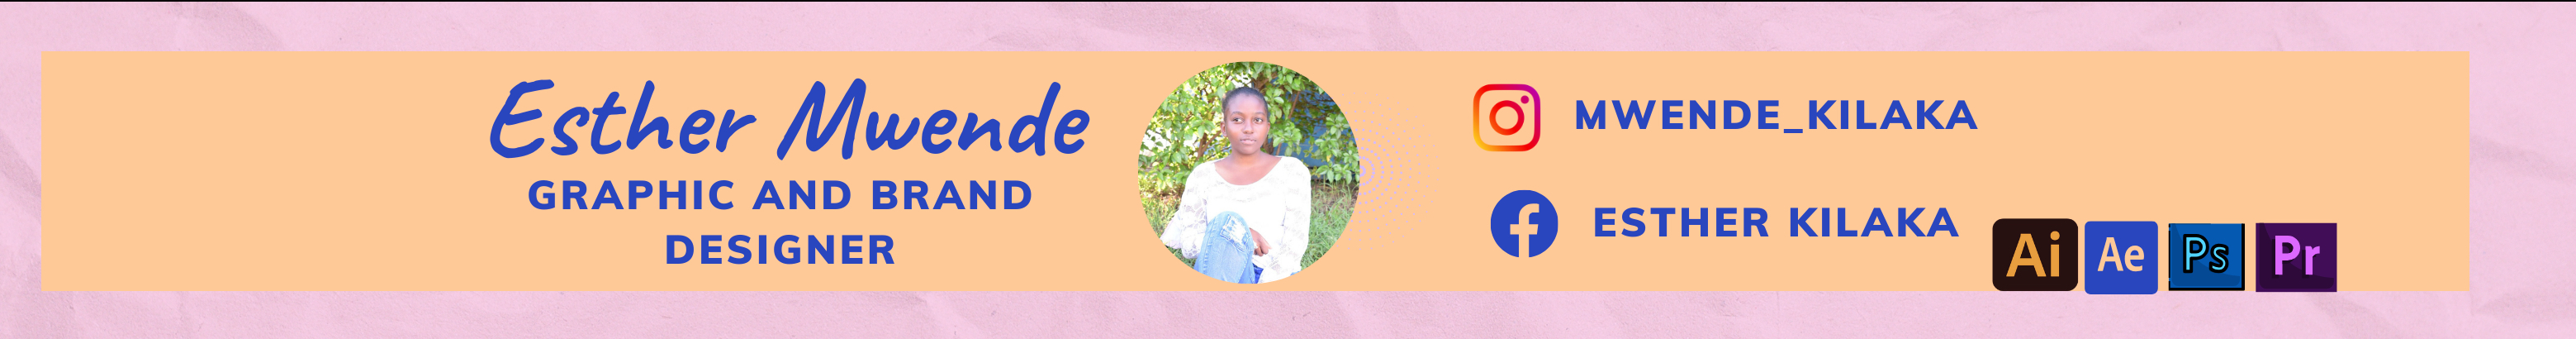 Profilbanneret til Esther Mwende